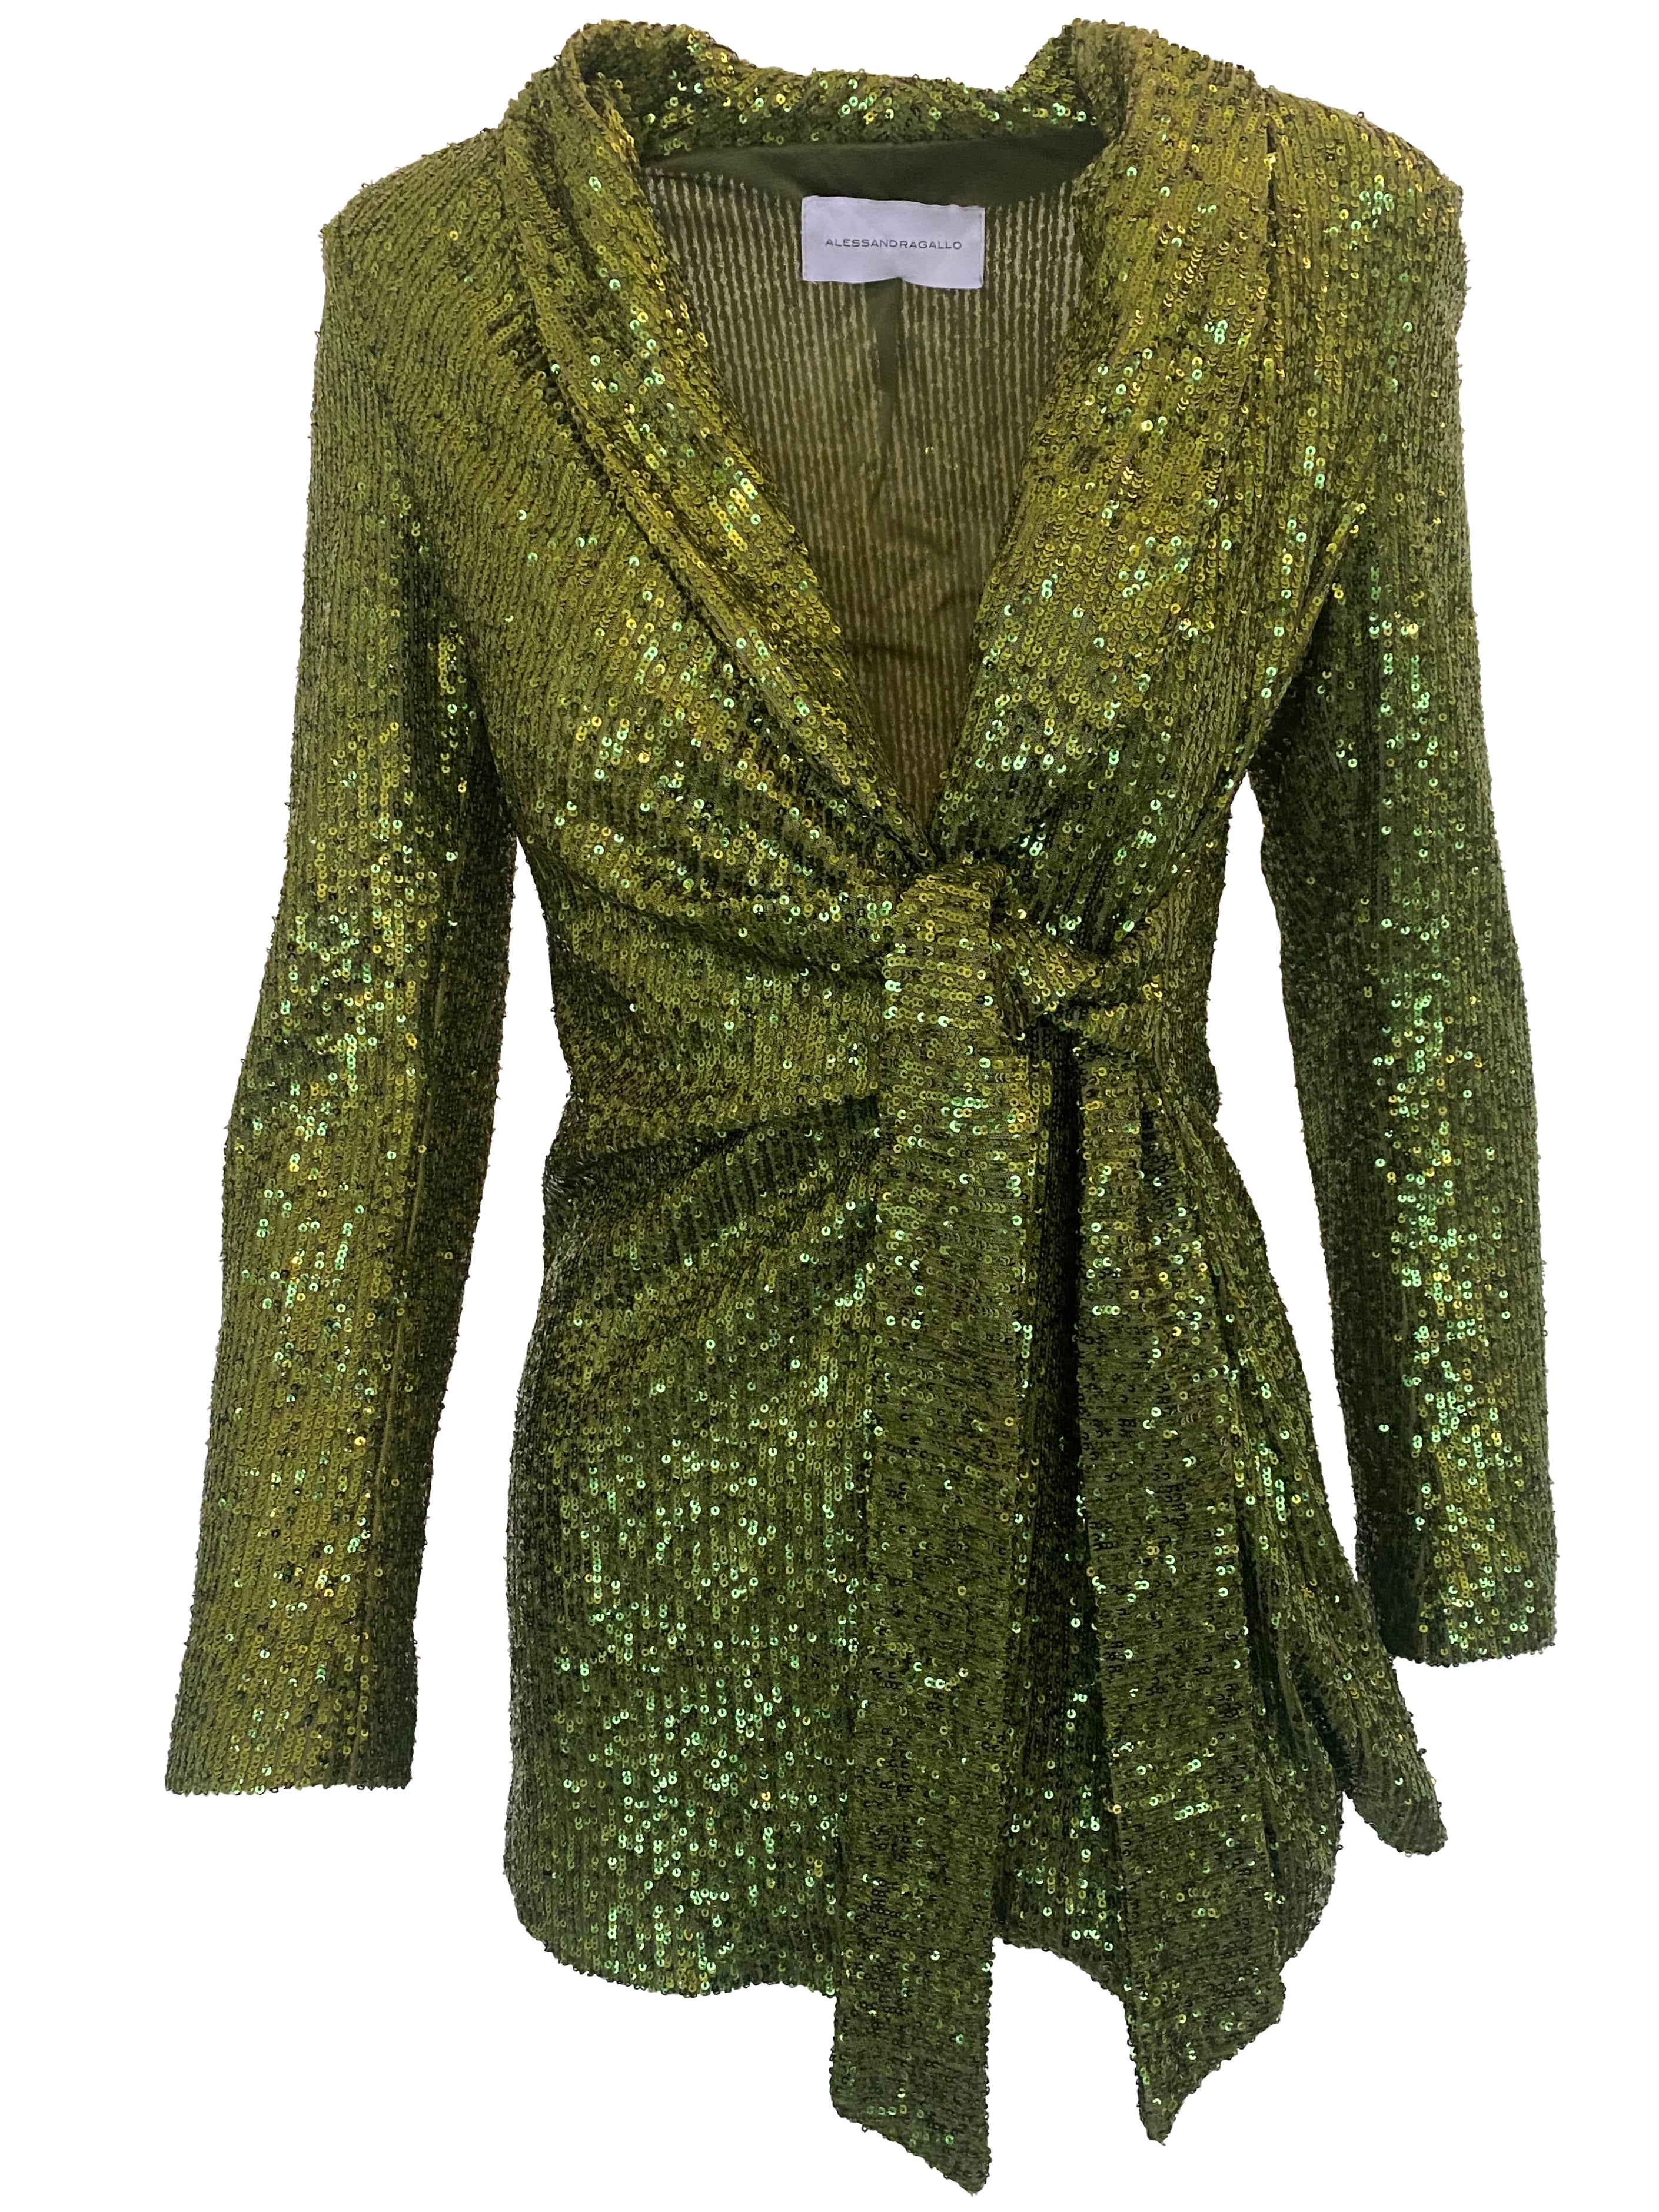 MEROPE - green sequin jacket